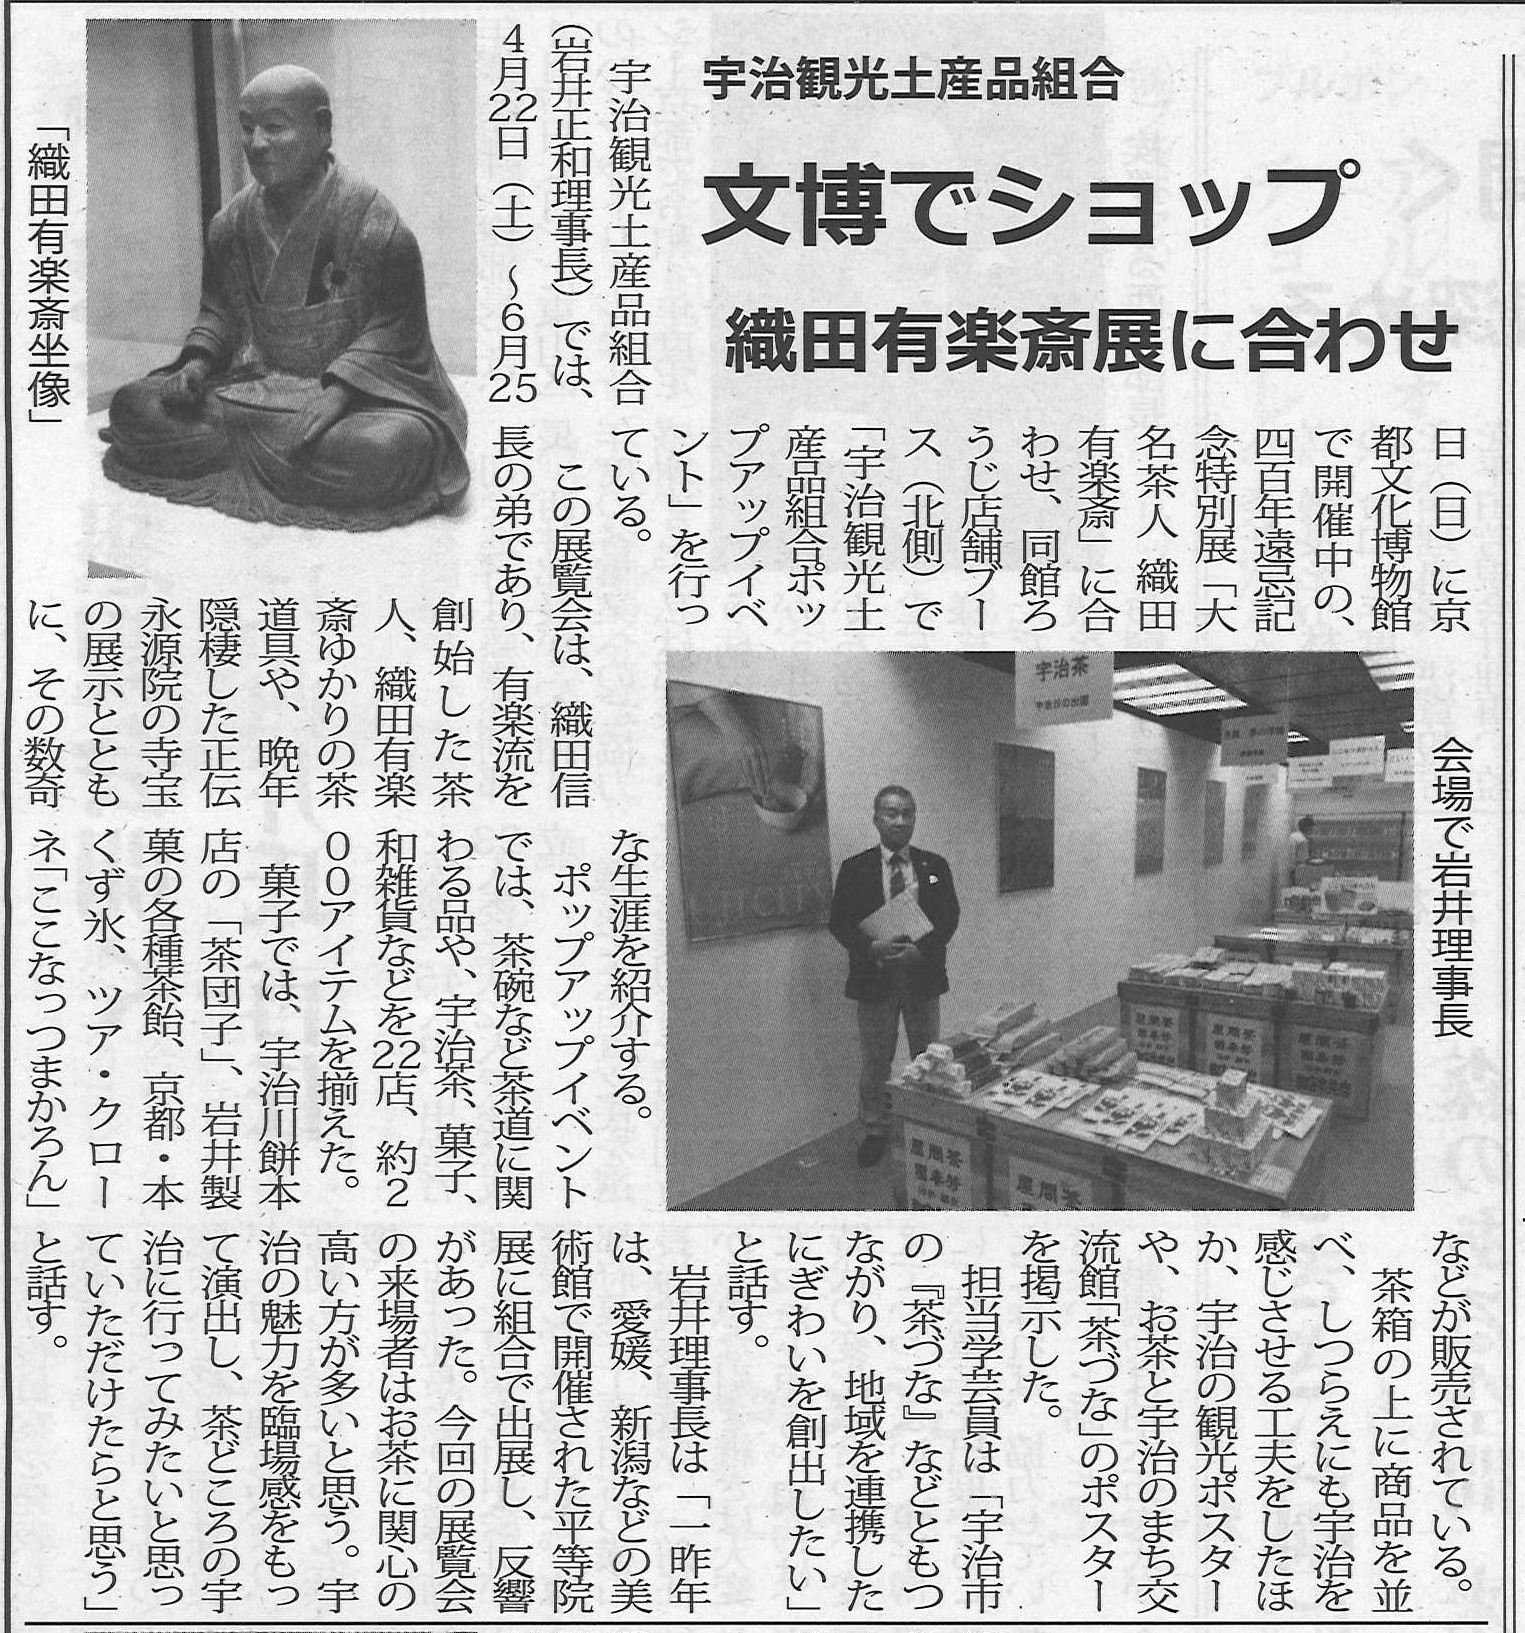 5月12日 菓業食品新聞にて、文博で行われている織田有楽斎展に合わせた観光土産品組合のコラボショップ